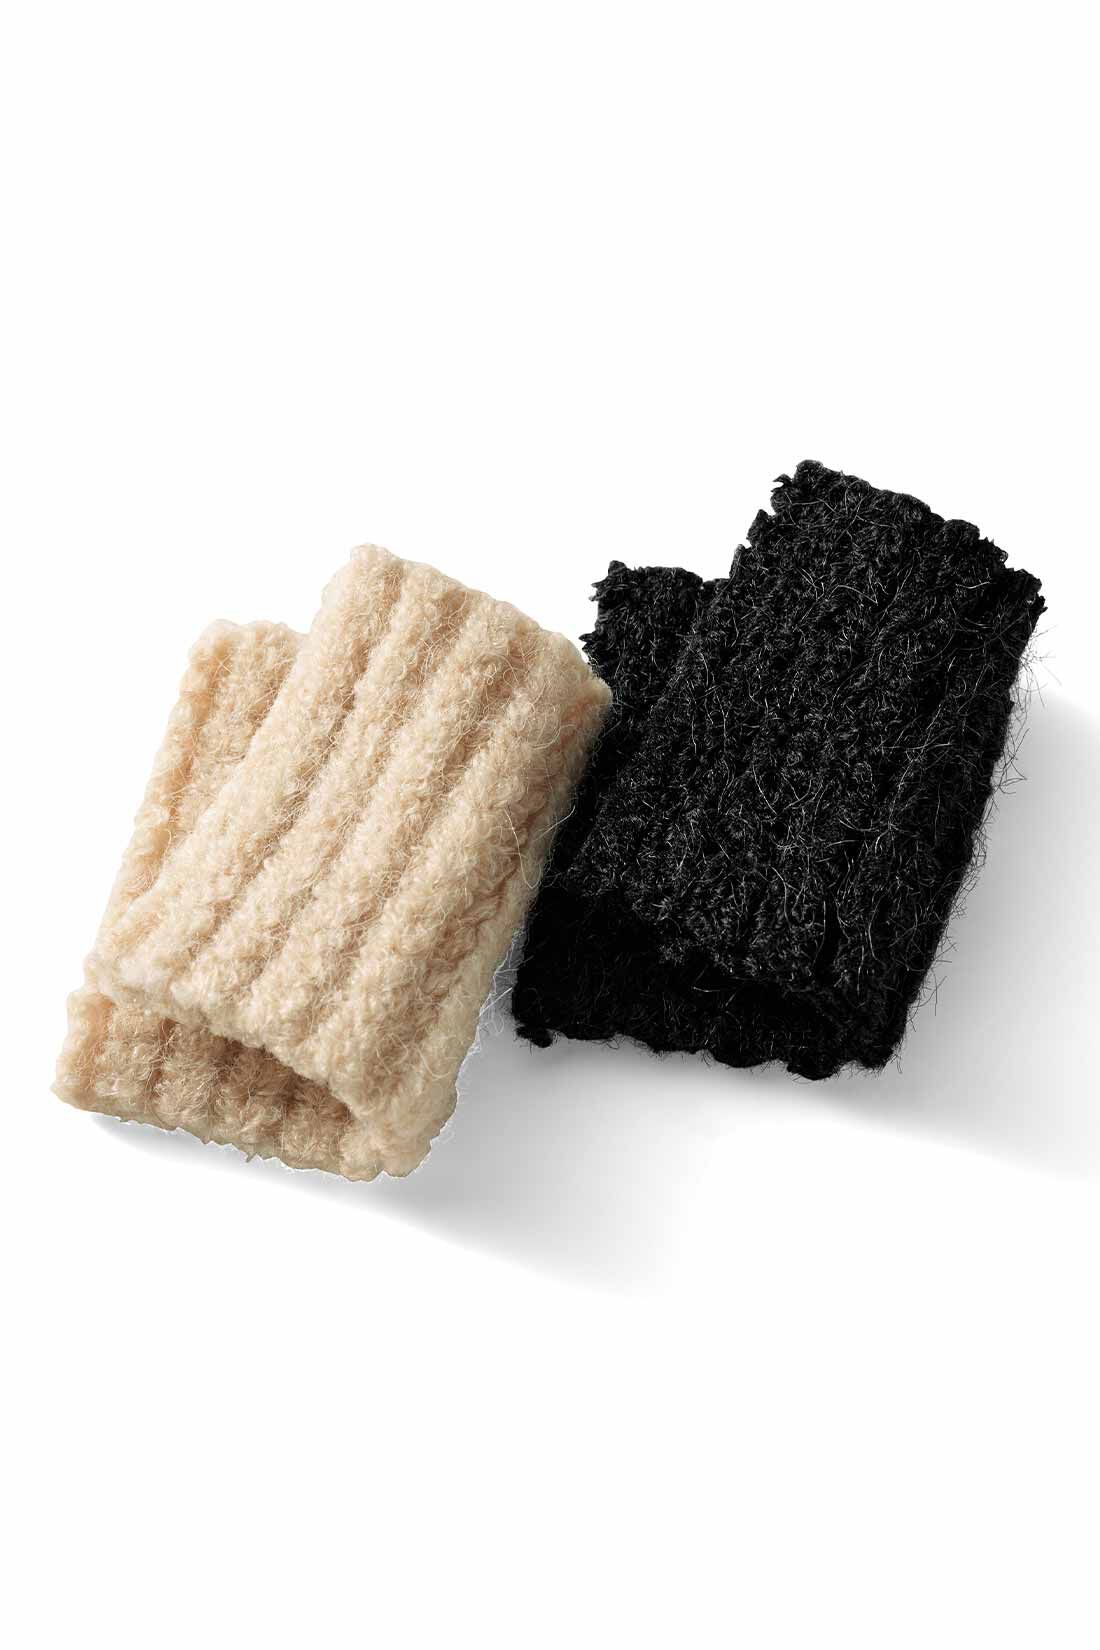 MEDE19F|MEDE19F　フェイクレイヤードニットワンピース〈アイボリー〉|毛足のある、ふんわりしたアクリル・ナイロン混の糸をセレクト。気軽に手洗いできるのも魅力です。